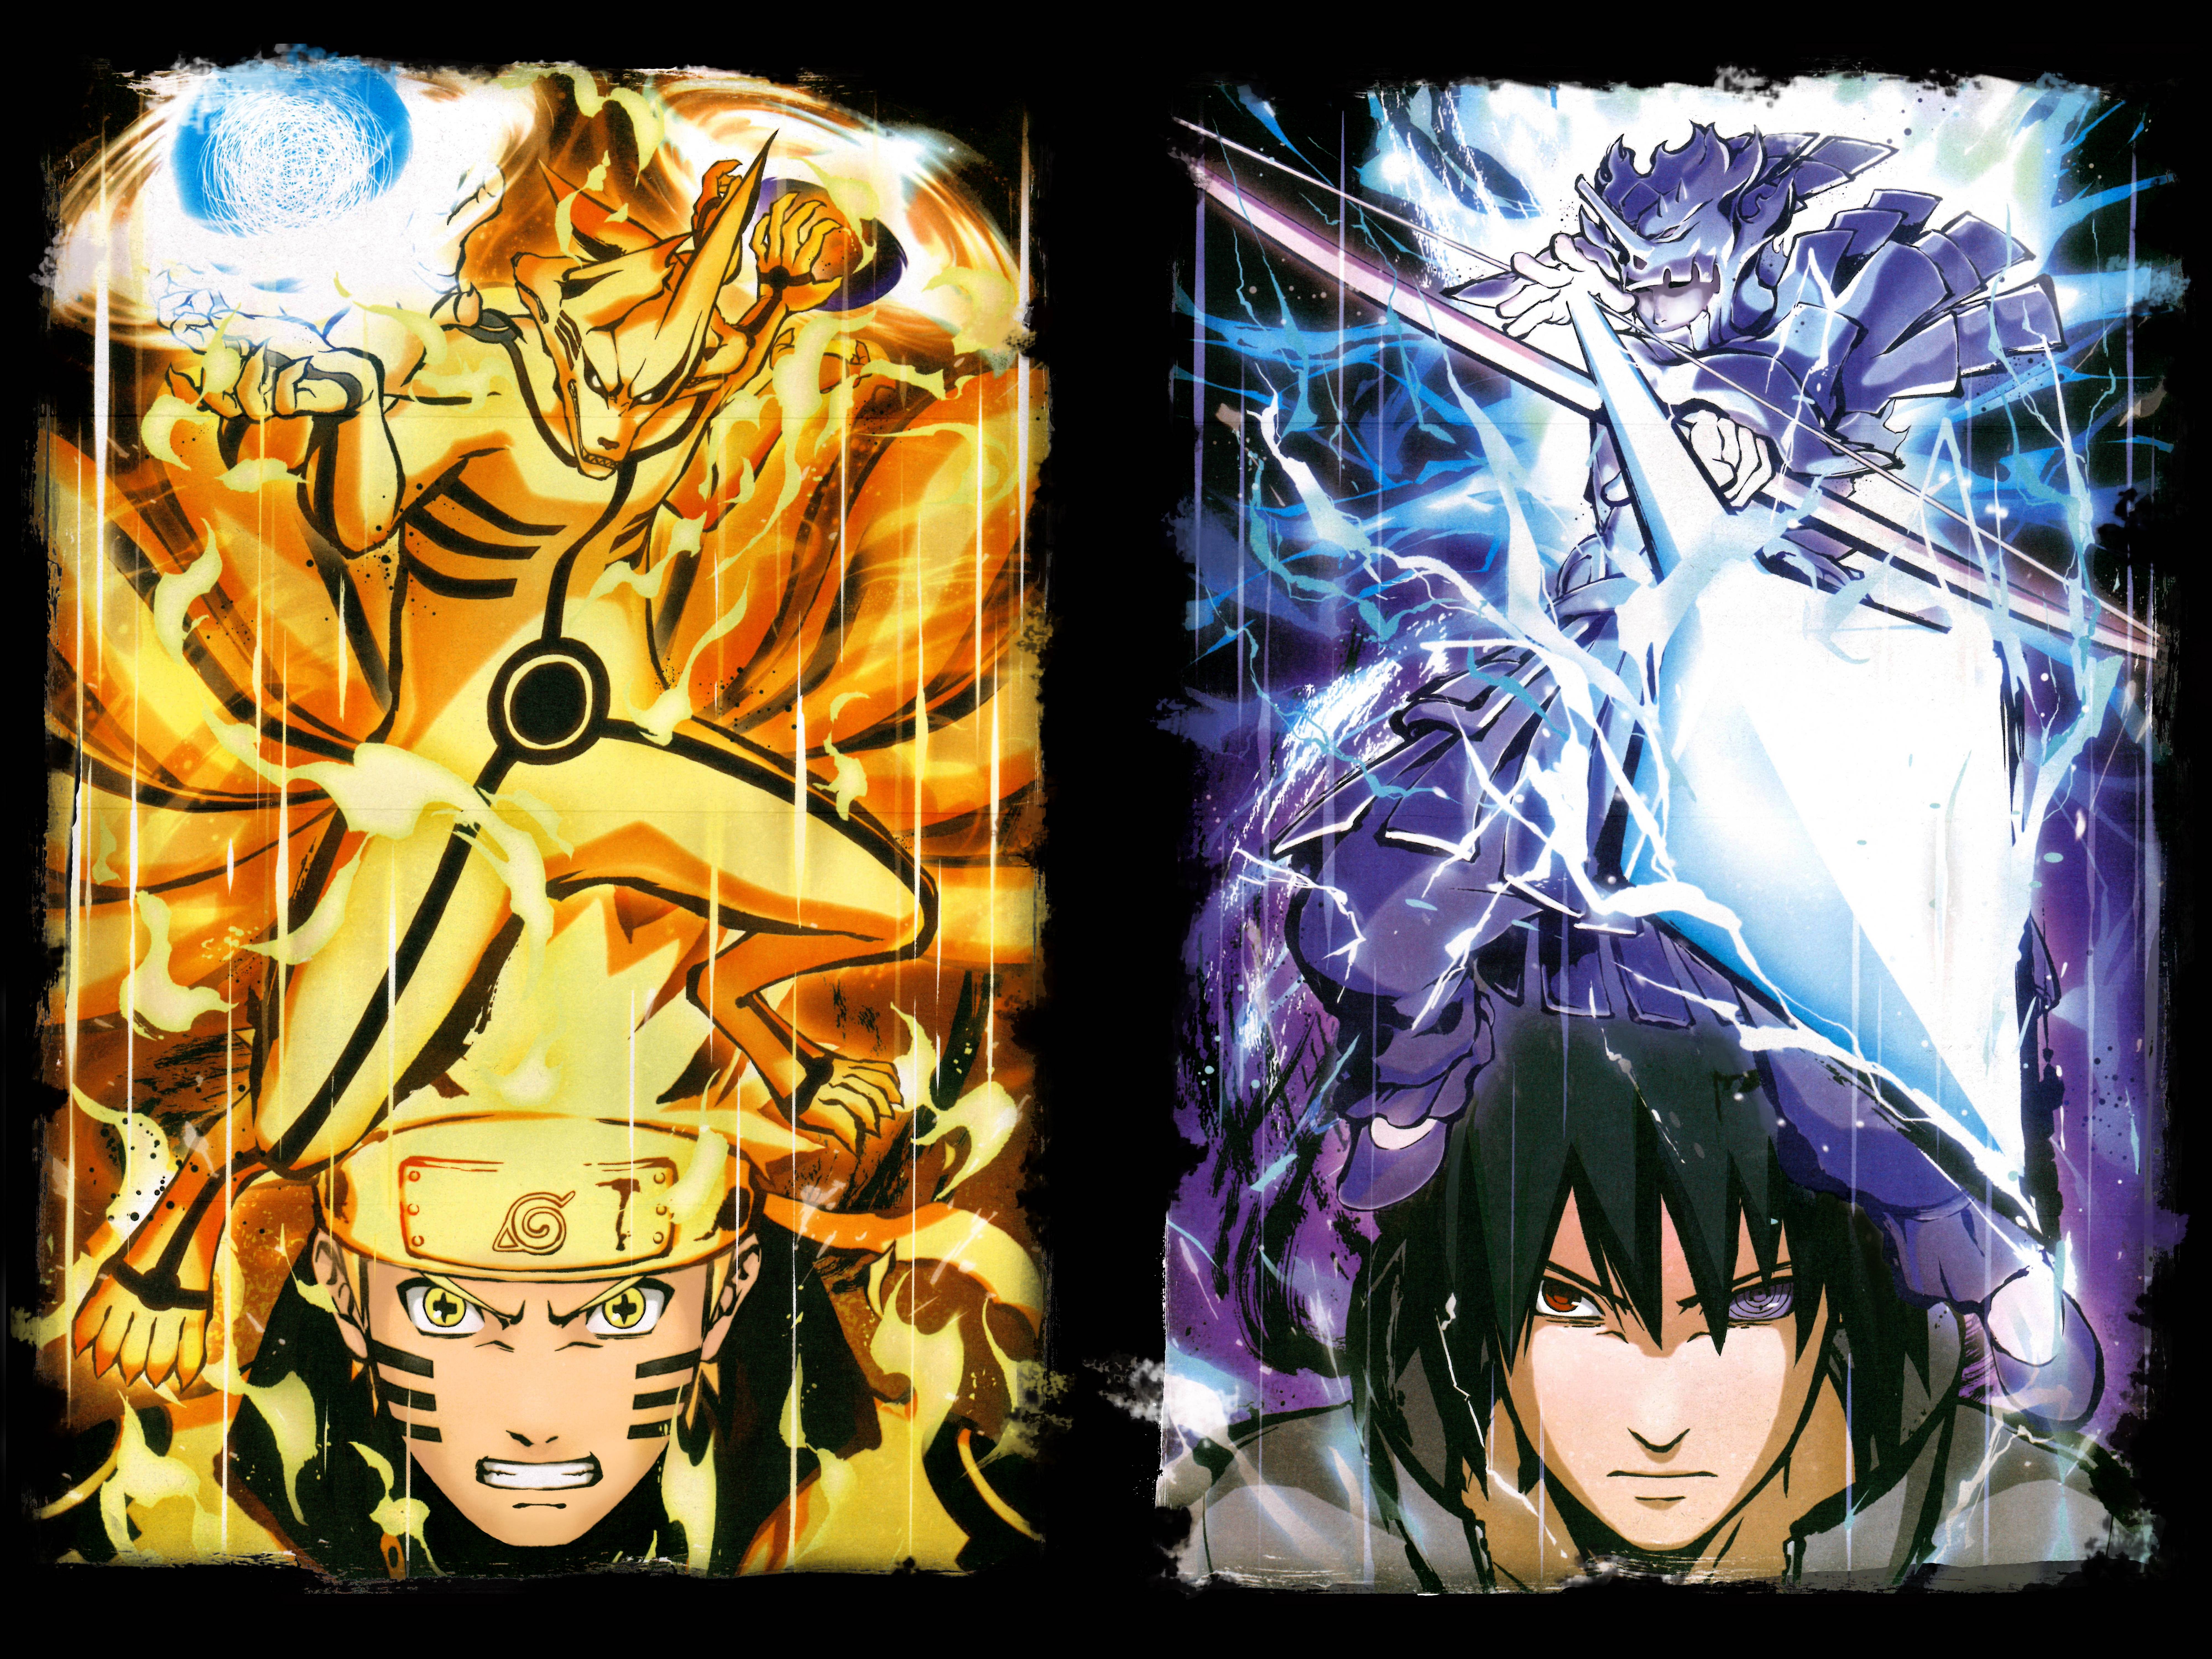 [98+] Naruto Six Paths Wallpapers on WallpaperSafari